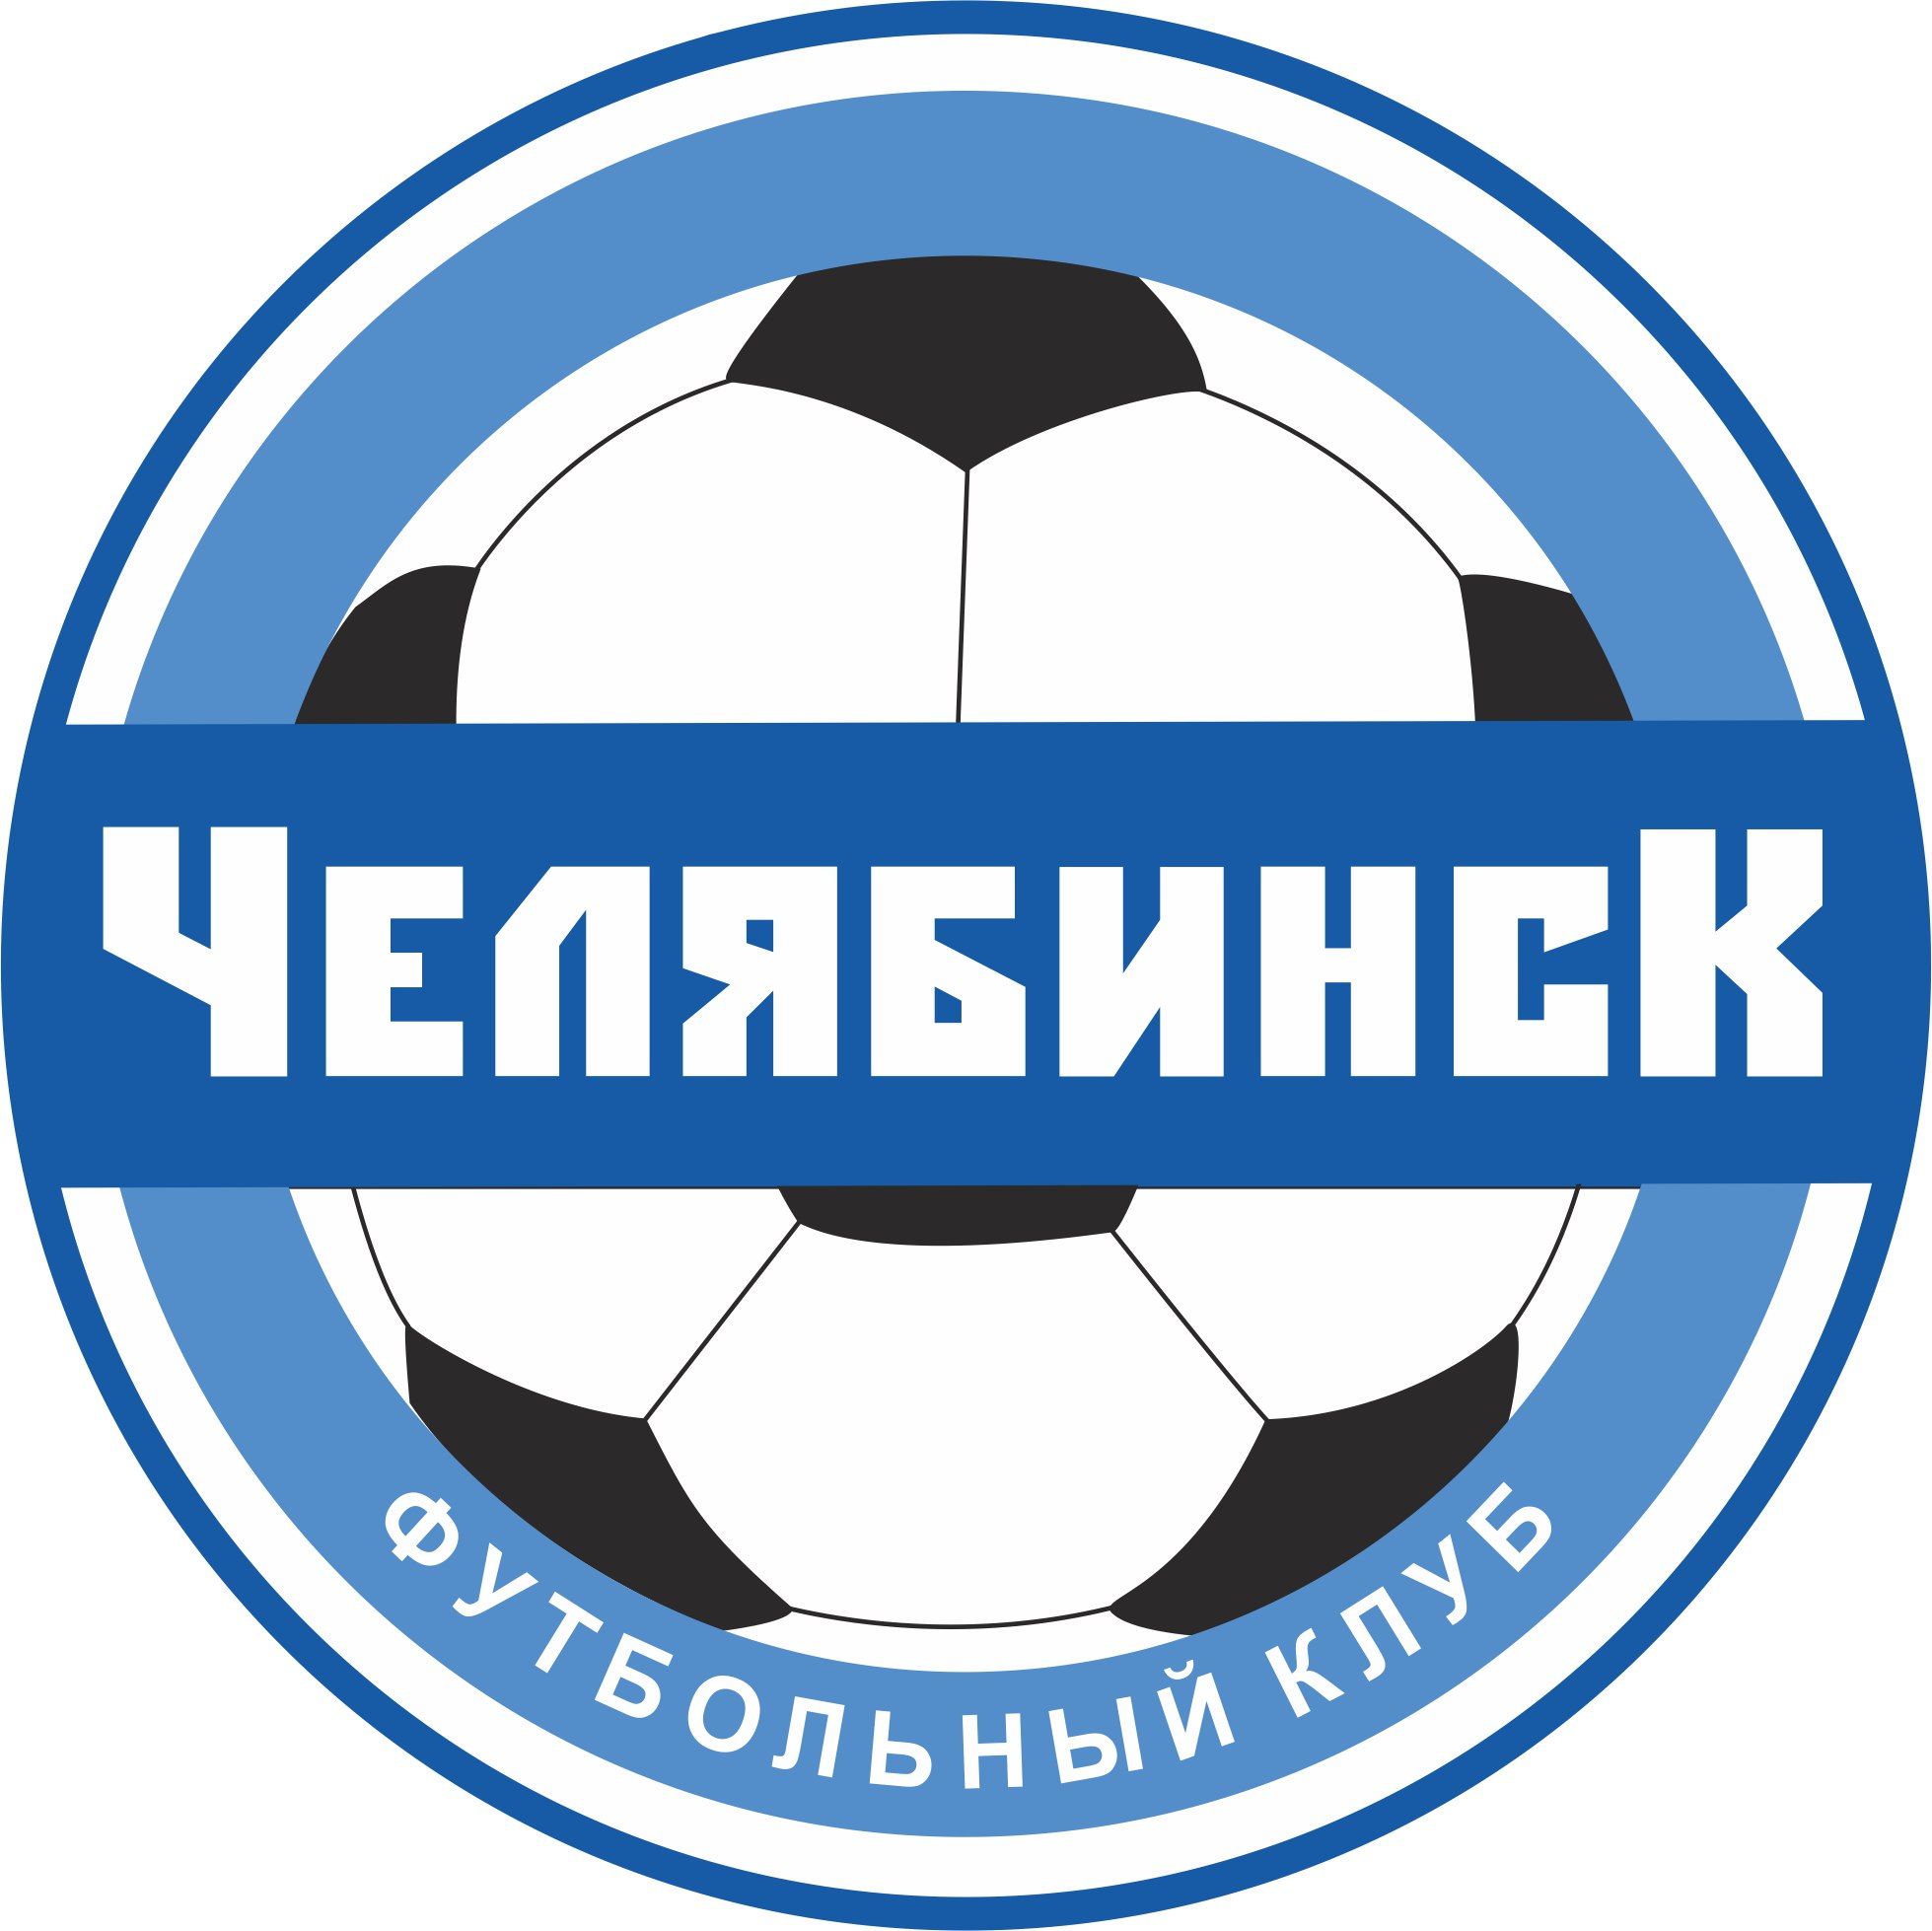 Отменён футбольный матч между ФК «Челябинск» и пермской «Звездой»